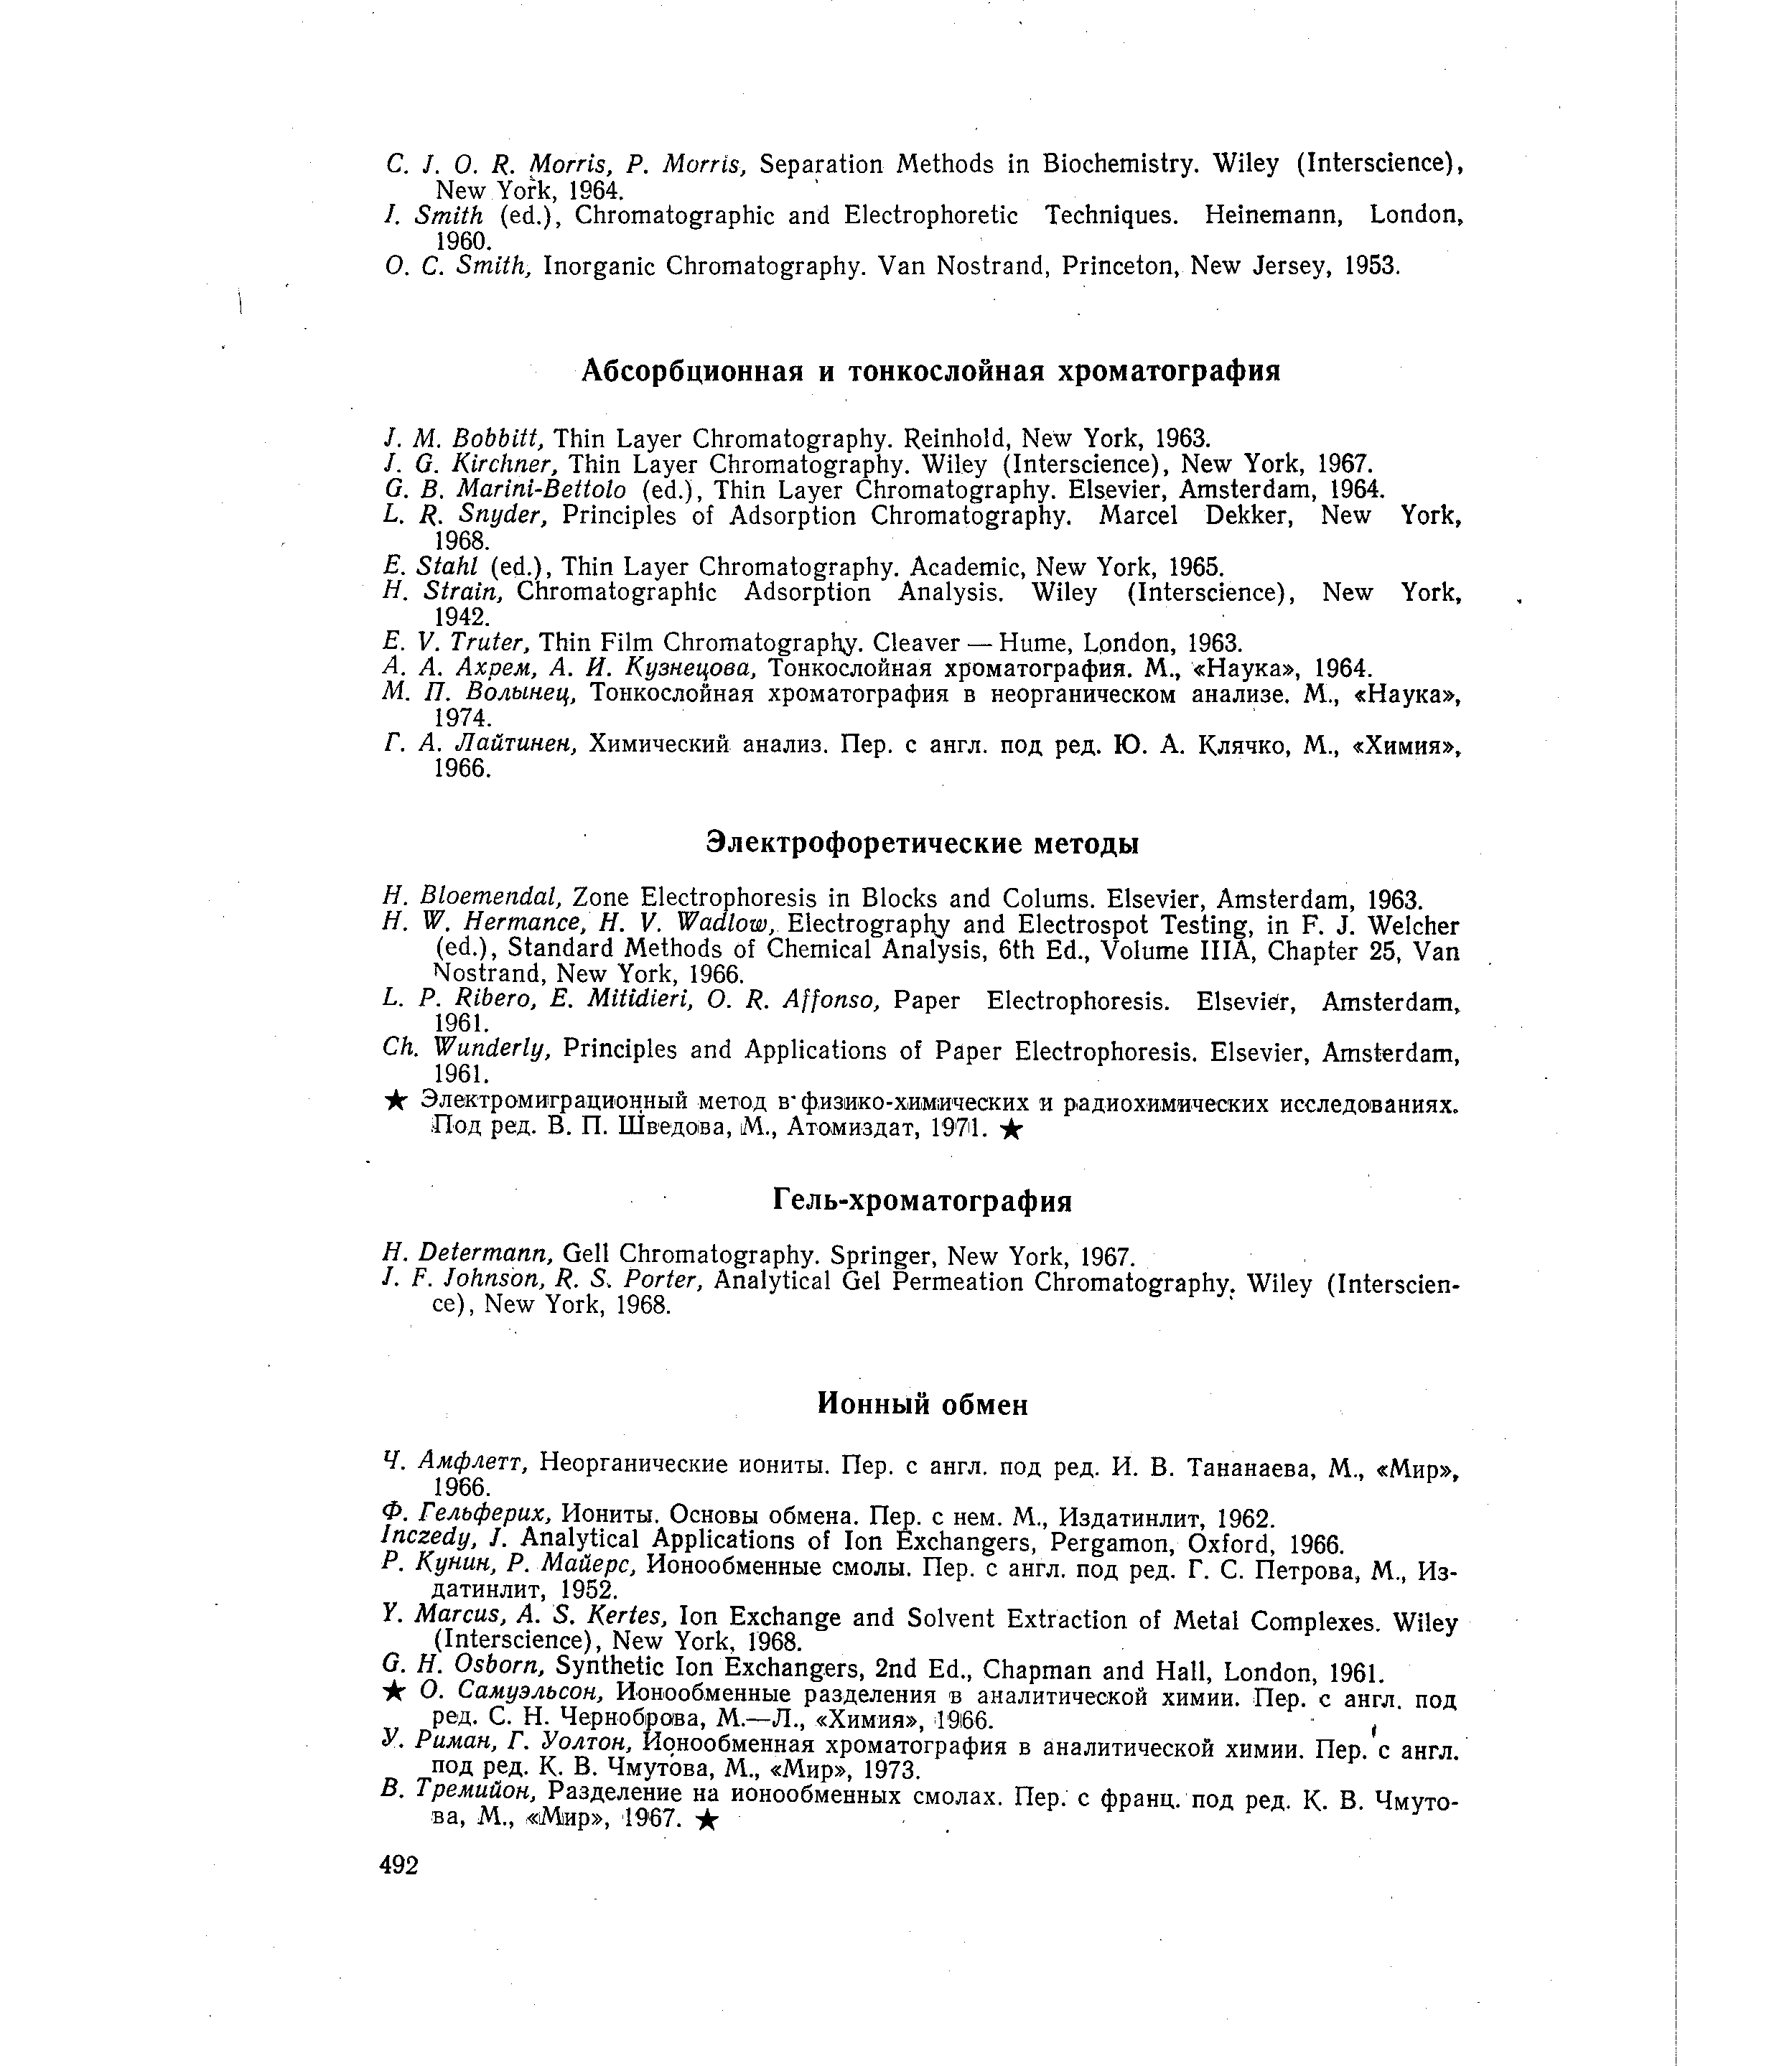 Волынец, Тонкослойная хроматография в неорганическом анализе. М., Наука , 1974.